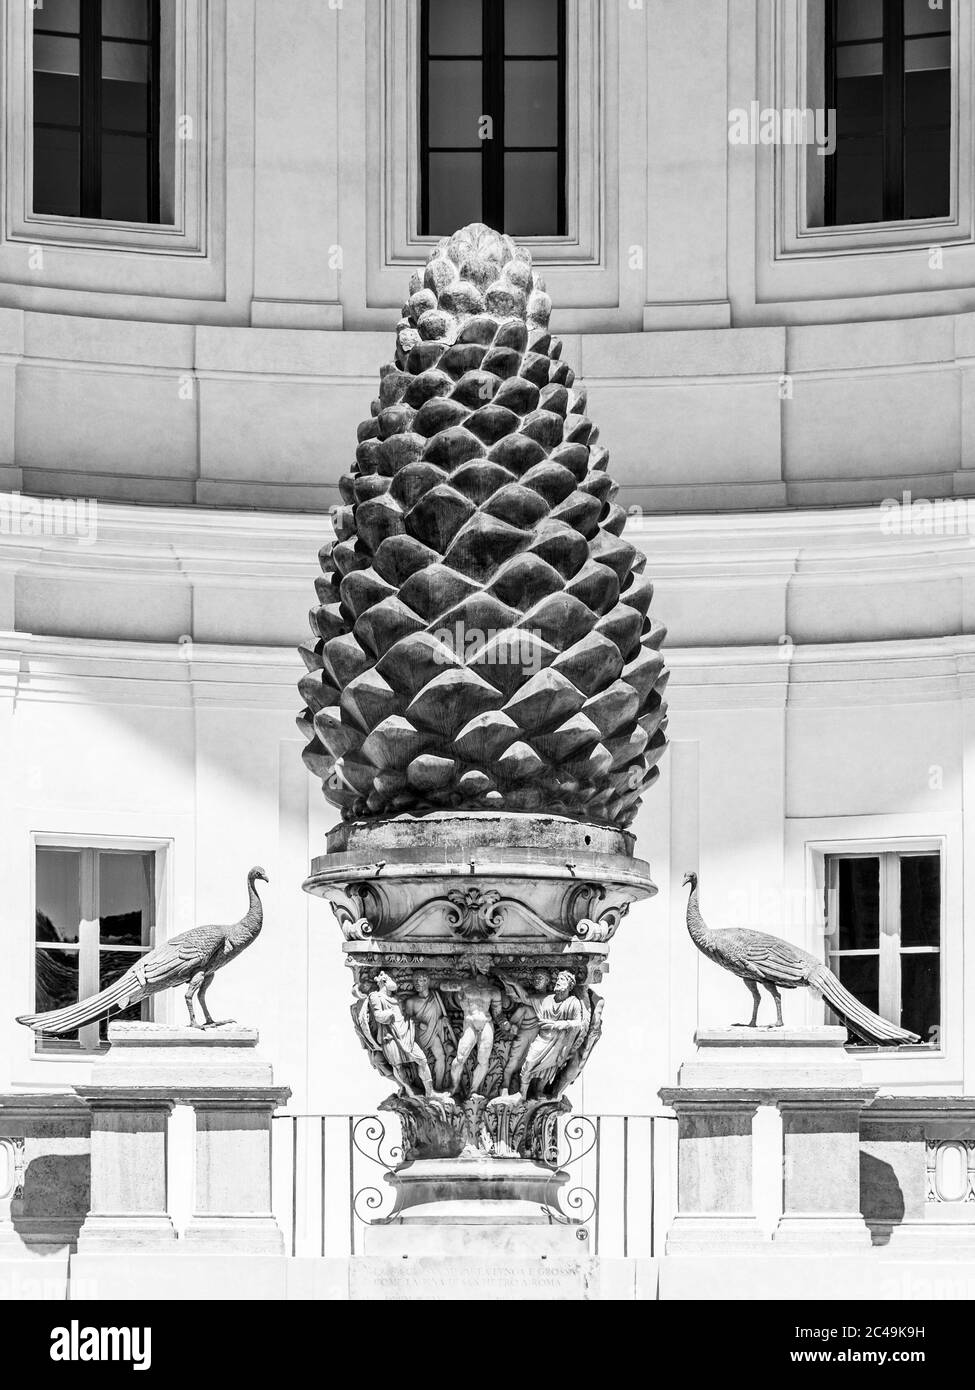 Bronze Pine Cone, italien : Fontana della Pigna, à la cour de la Pigna du Vatican Musées, Cité du Vatican. Image en noir et blanc. Banque D'Images